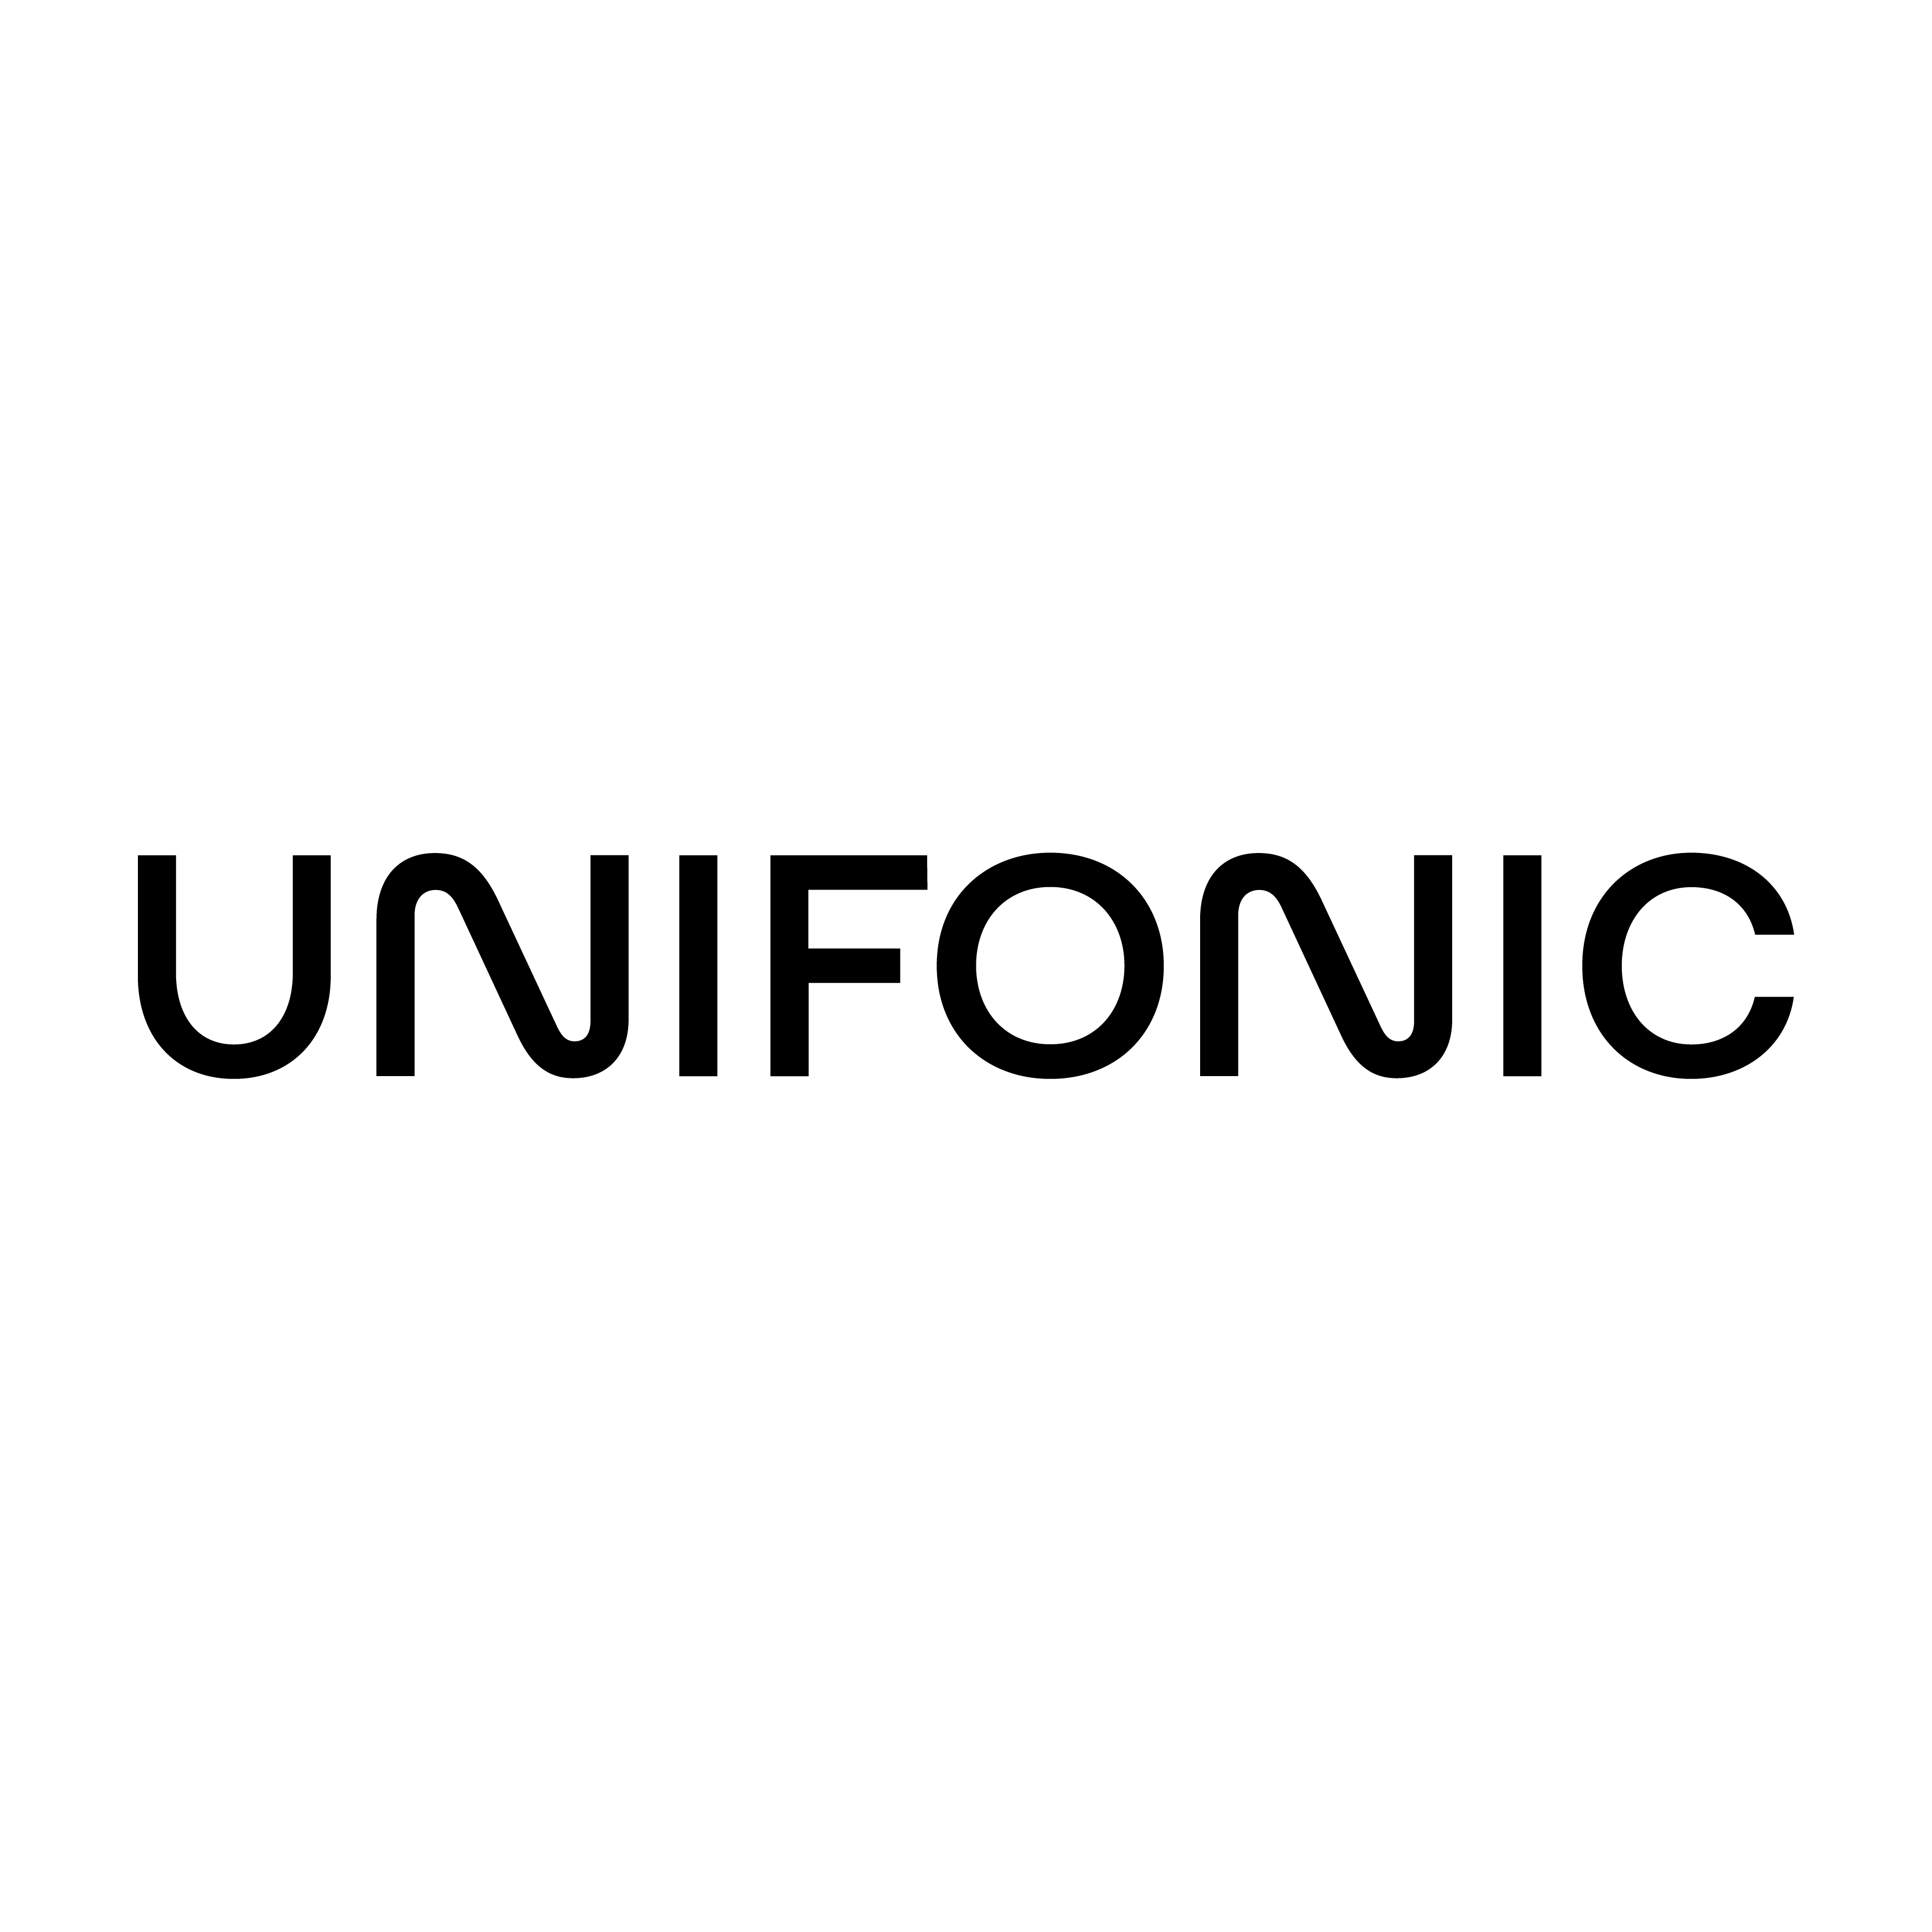 Die Dubai, Dubai, United Arab Emirates Agentur Cactix half Unifonic dabei, sein Geschäft mit SEO und digitalem Marketing zu vergrößern